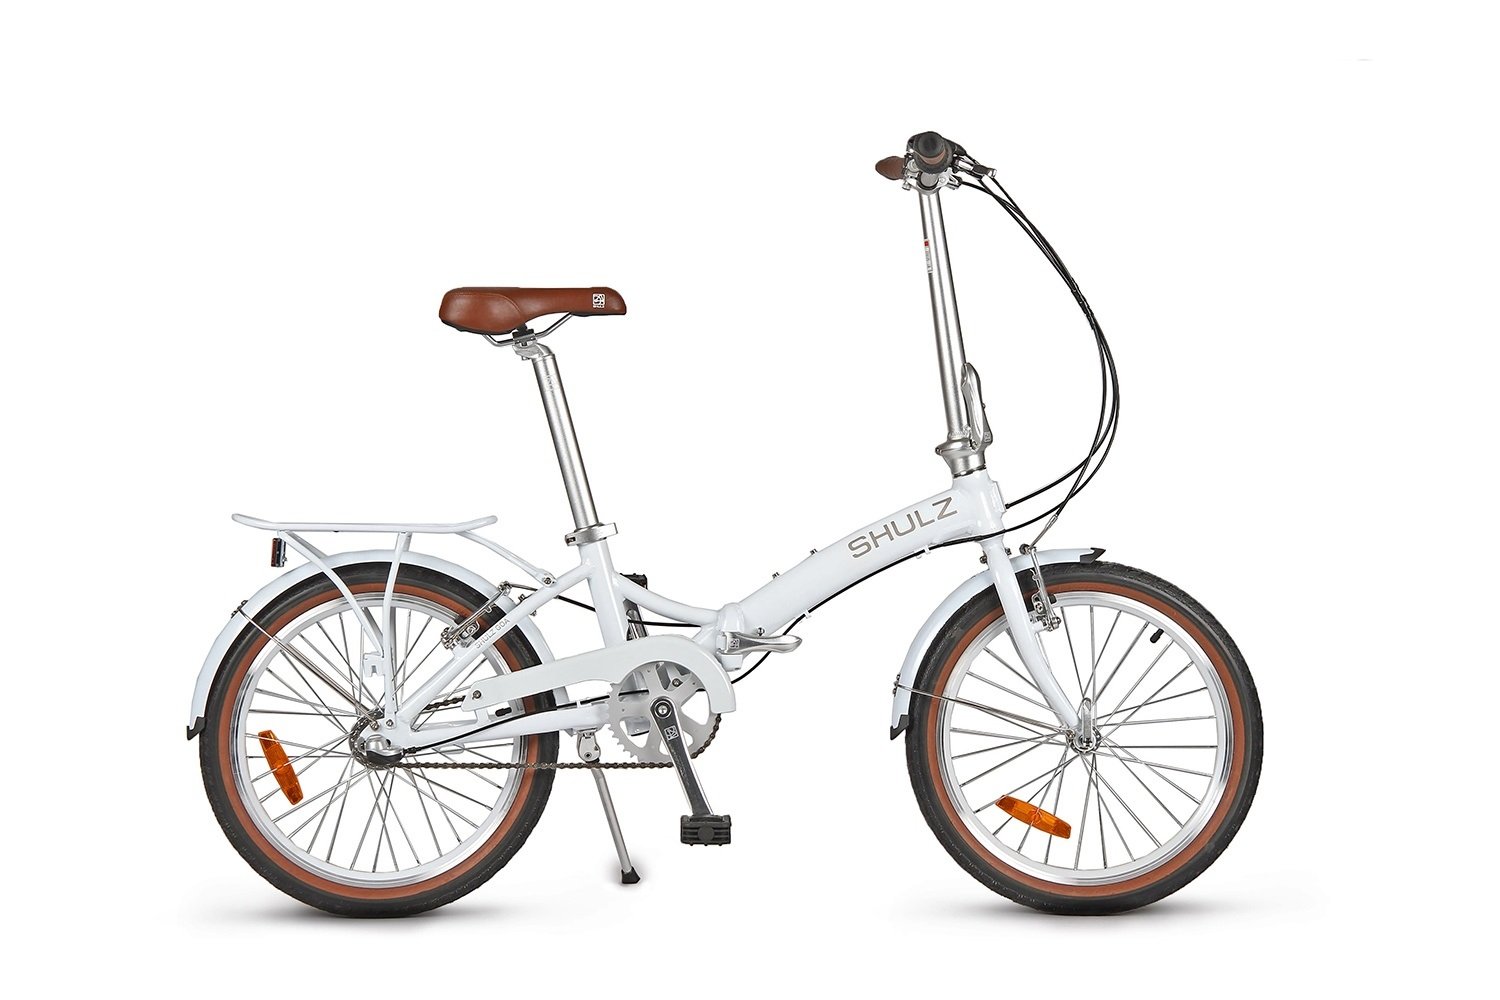 Складной велосипед SHULZ GOA V '16 складной белый, 2021, 16GVWH женский велосипед haro soulville st год 2021 зеленый ростовка 17